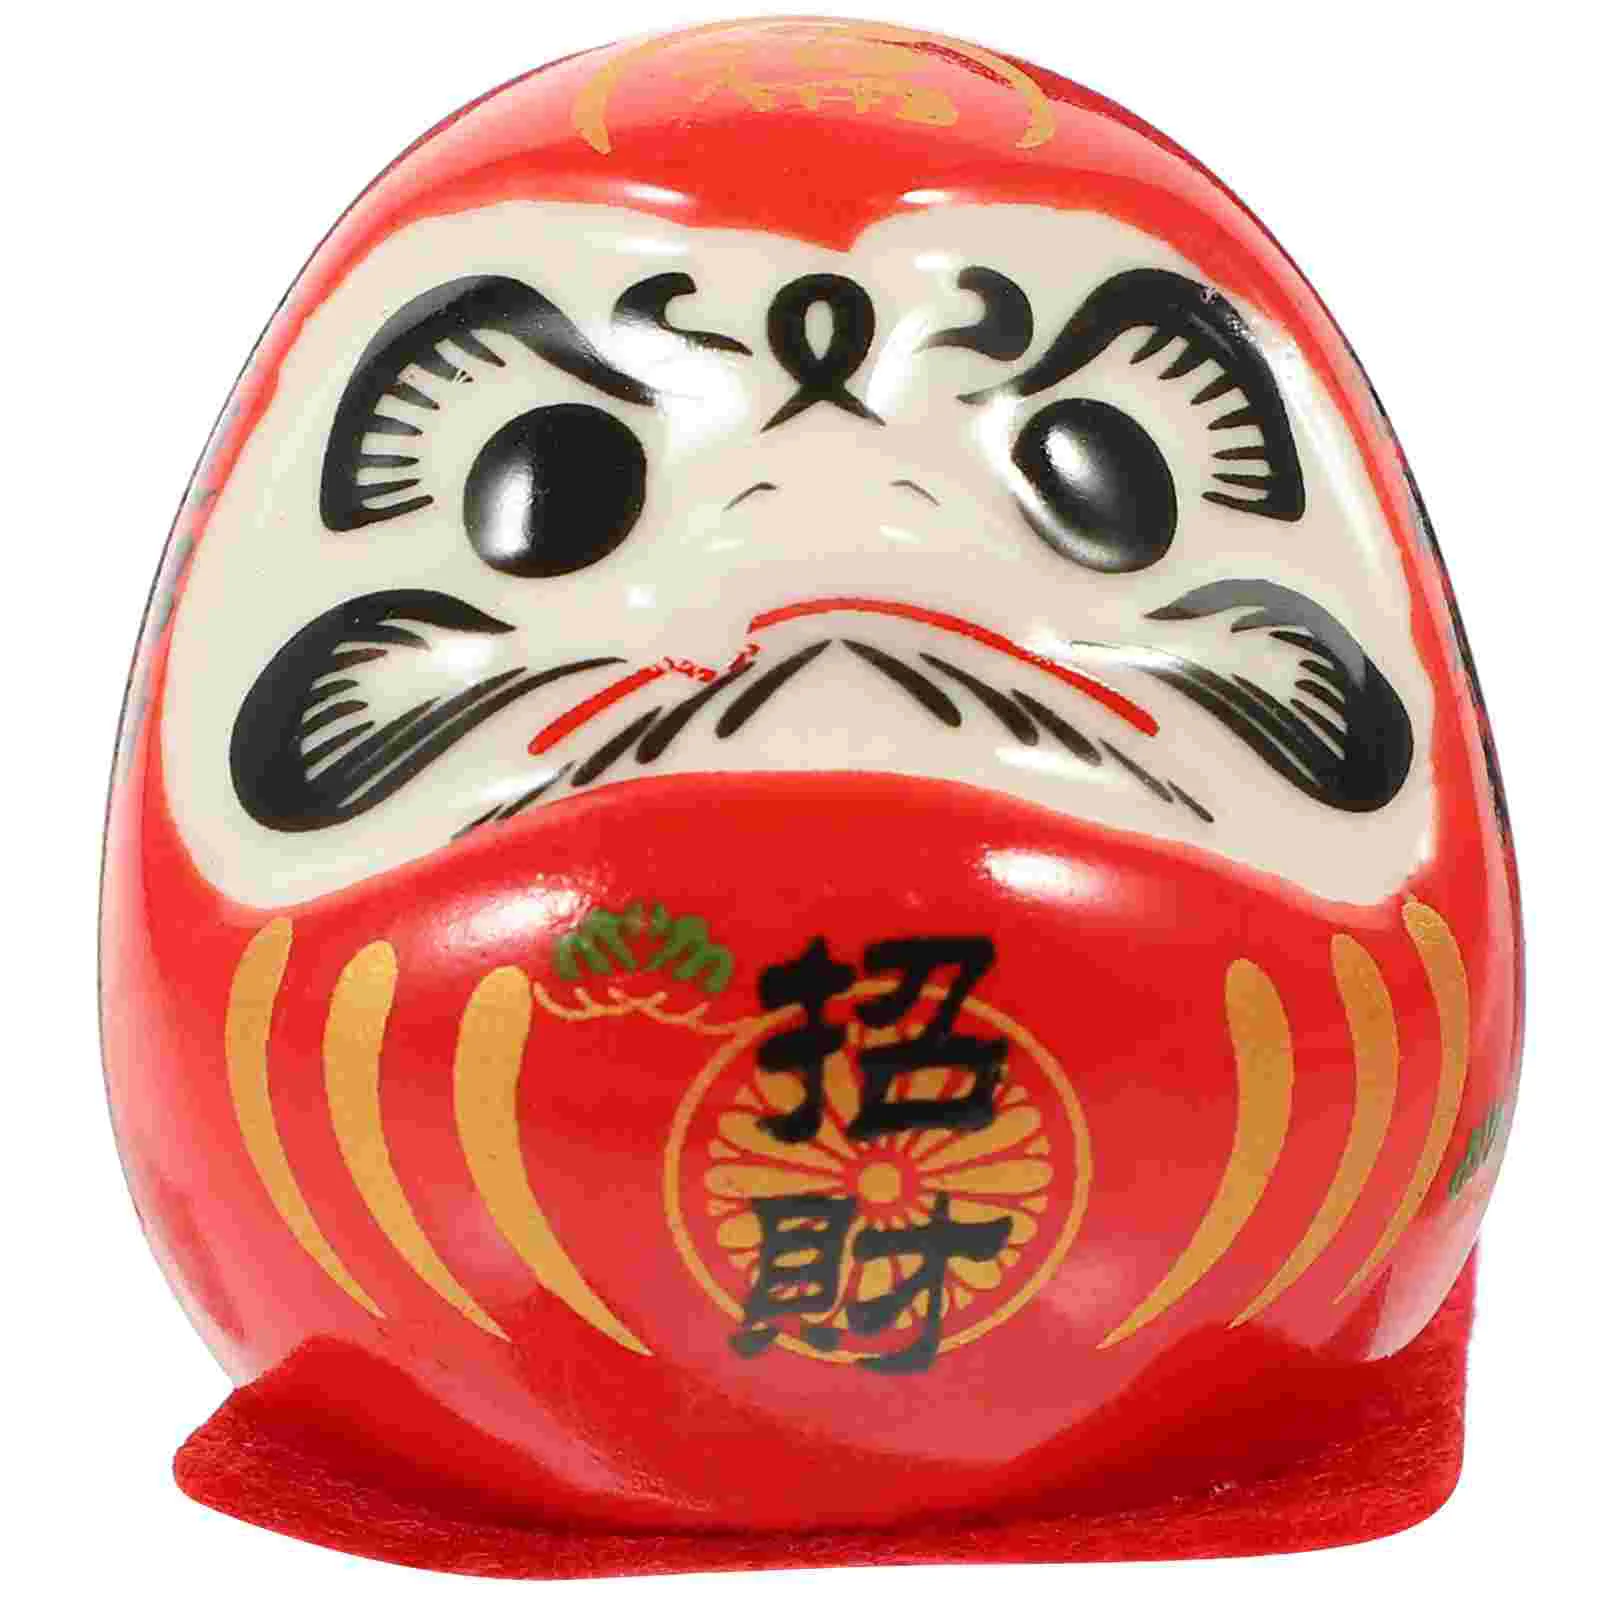 יפנית קישוטים דהרמה ביצים דרומא כוס פורצלן 4.7X4.4X4.2 סנטימטר המכונית האדומה קרמיקה צלמית